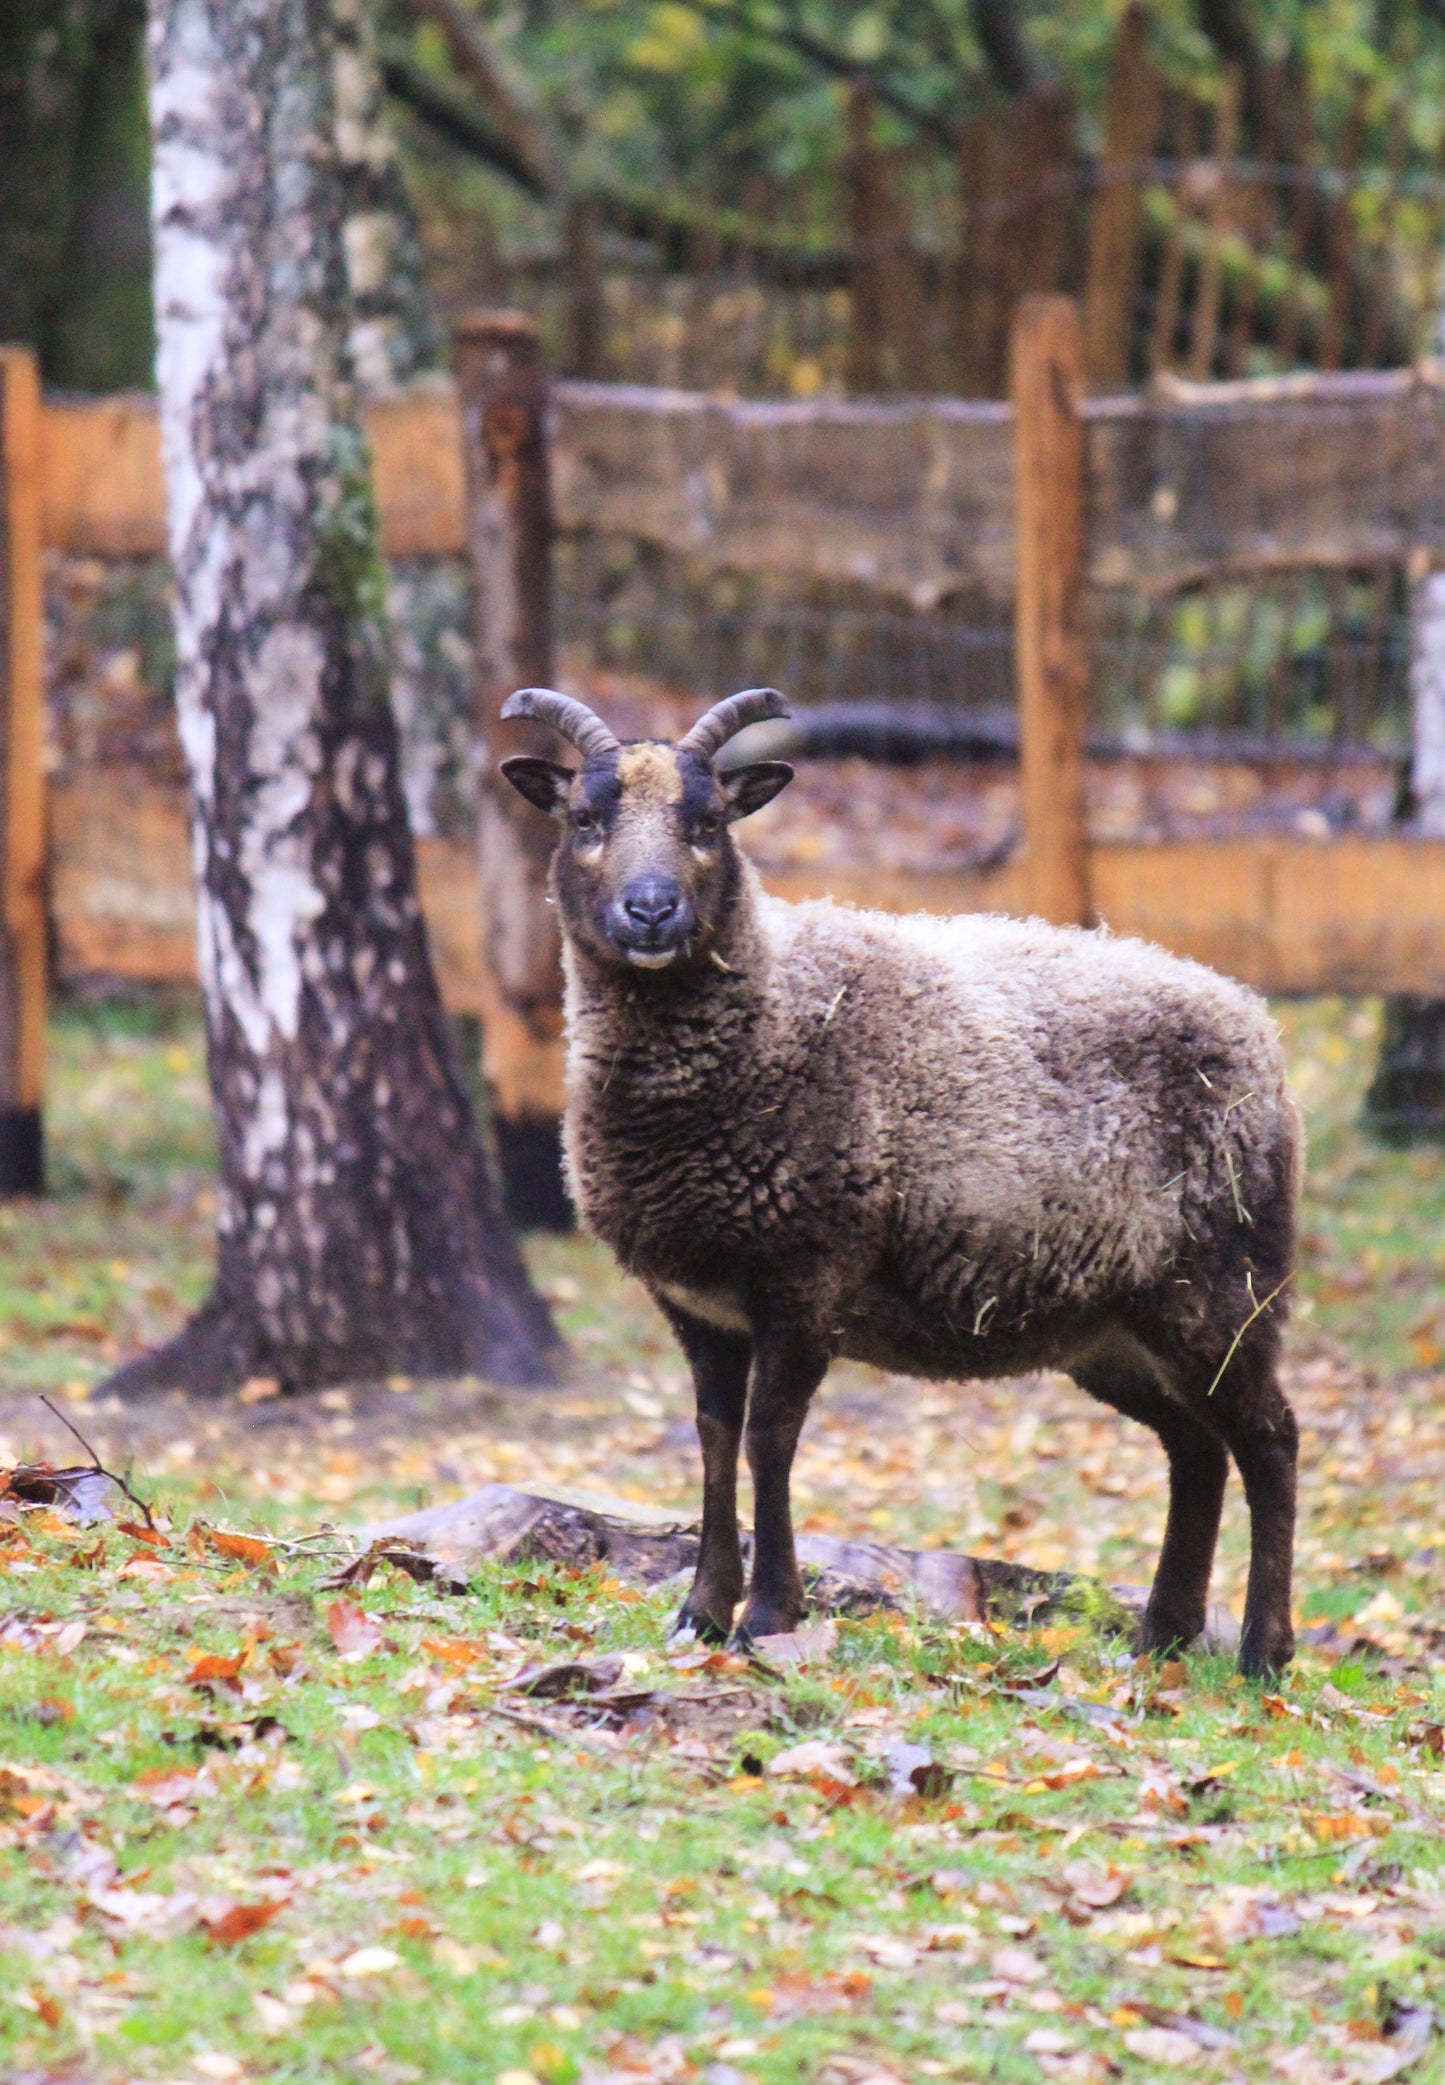 Tierpatenschaft Schafe